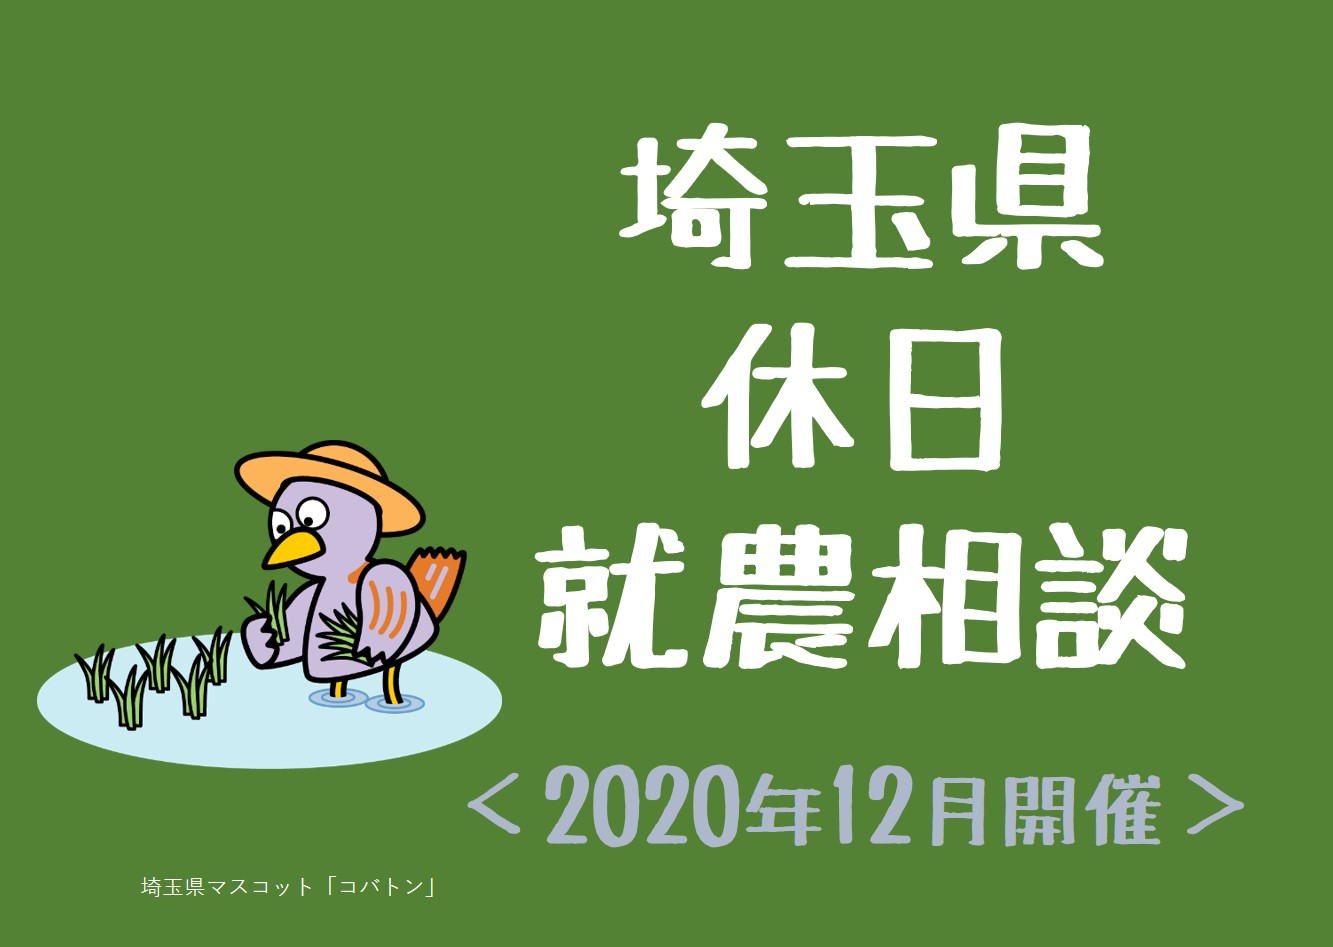 休日就農相談【2020年12月】 | 地域のトピックス